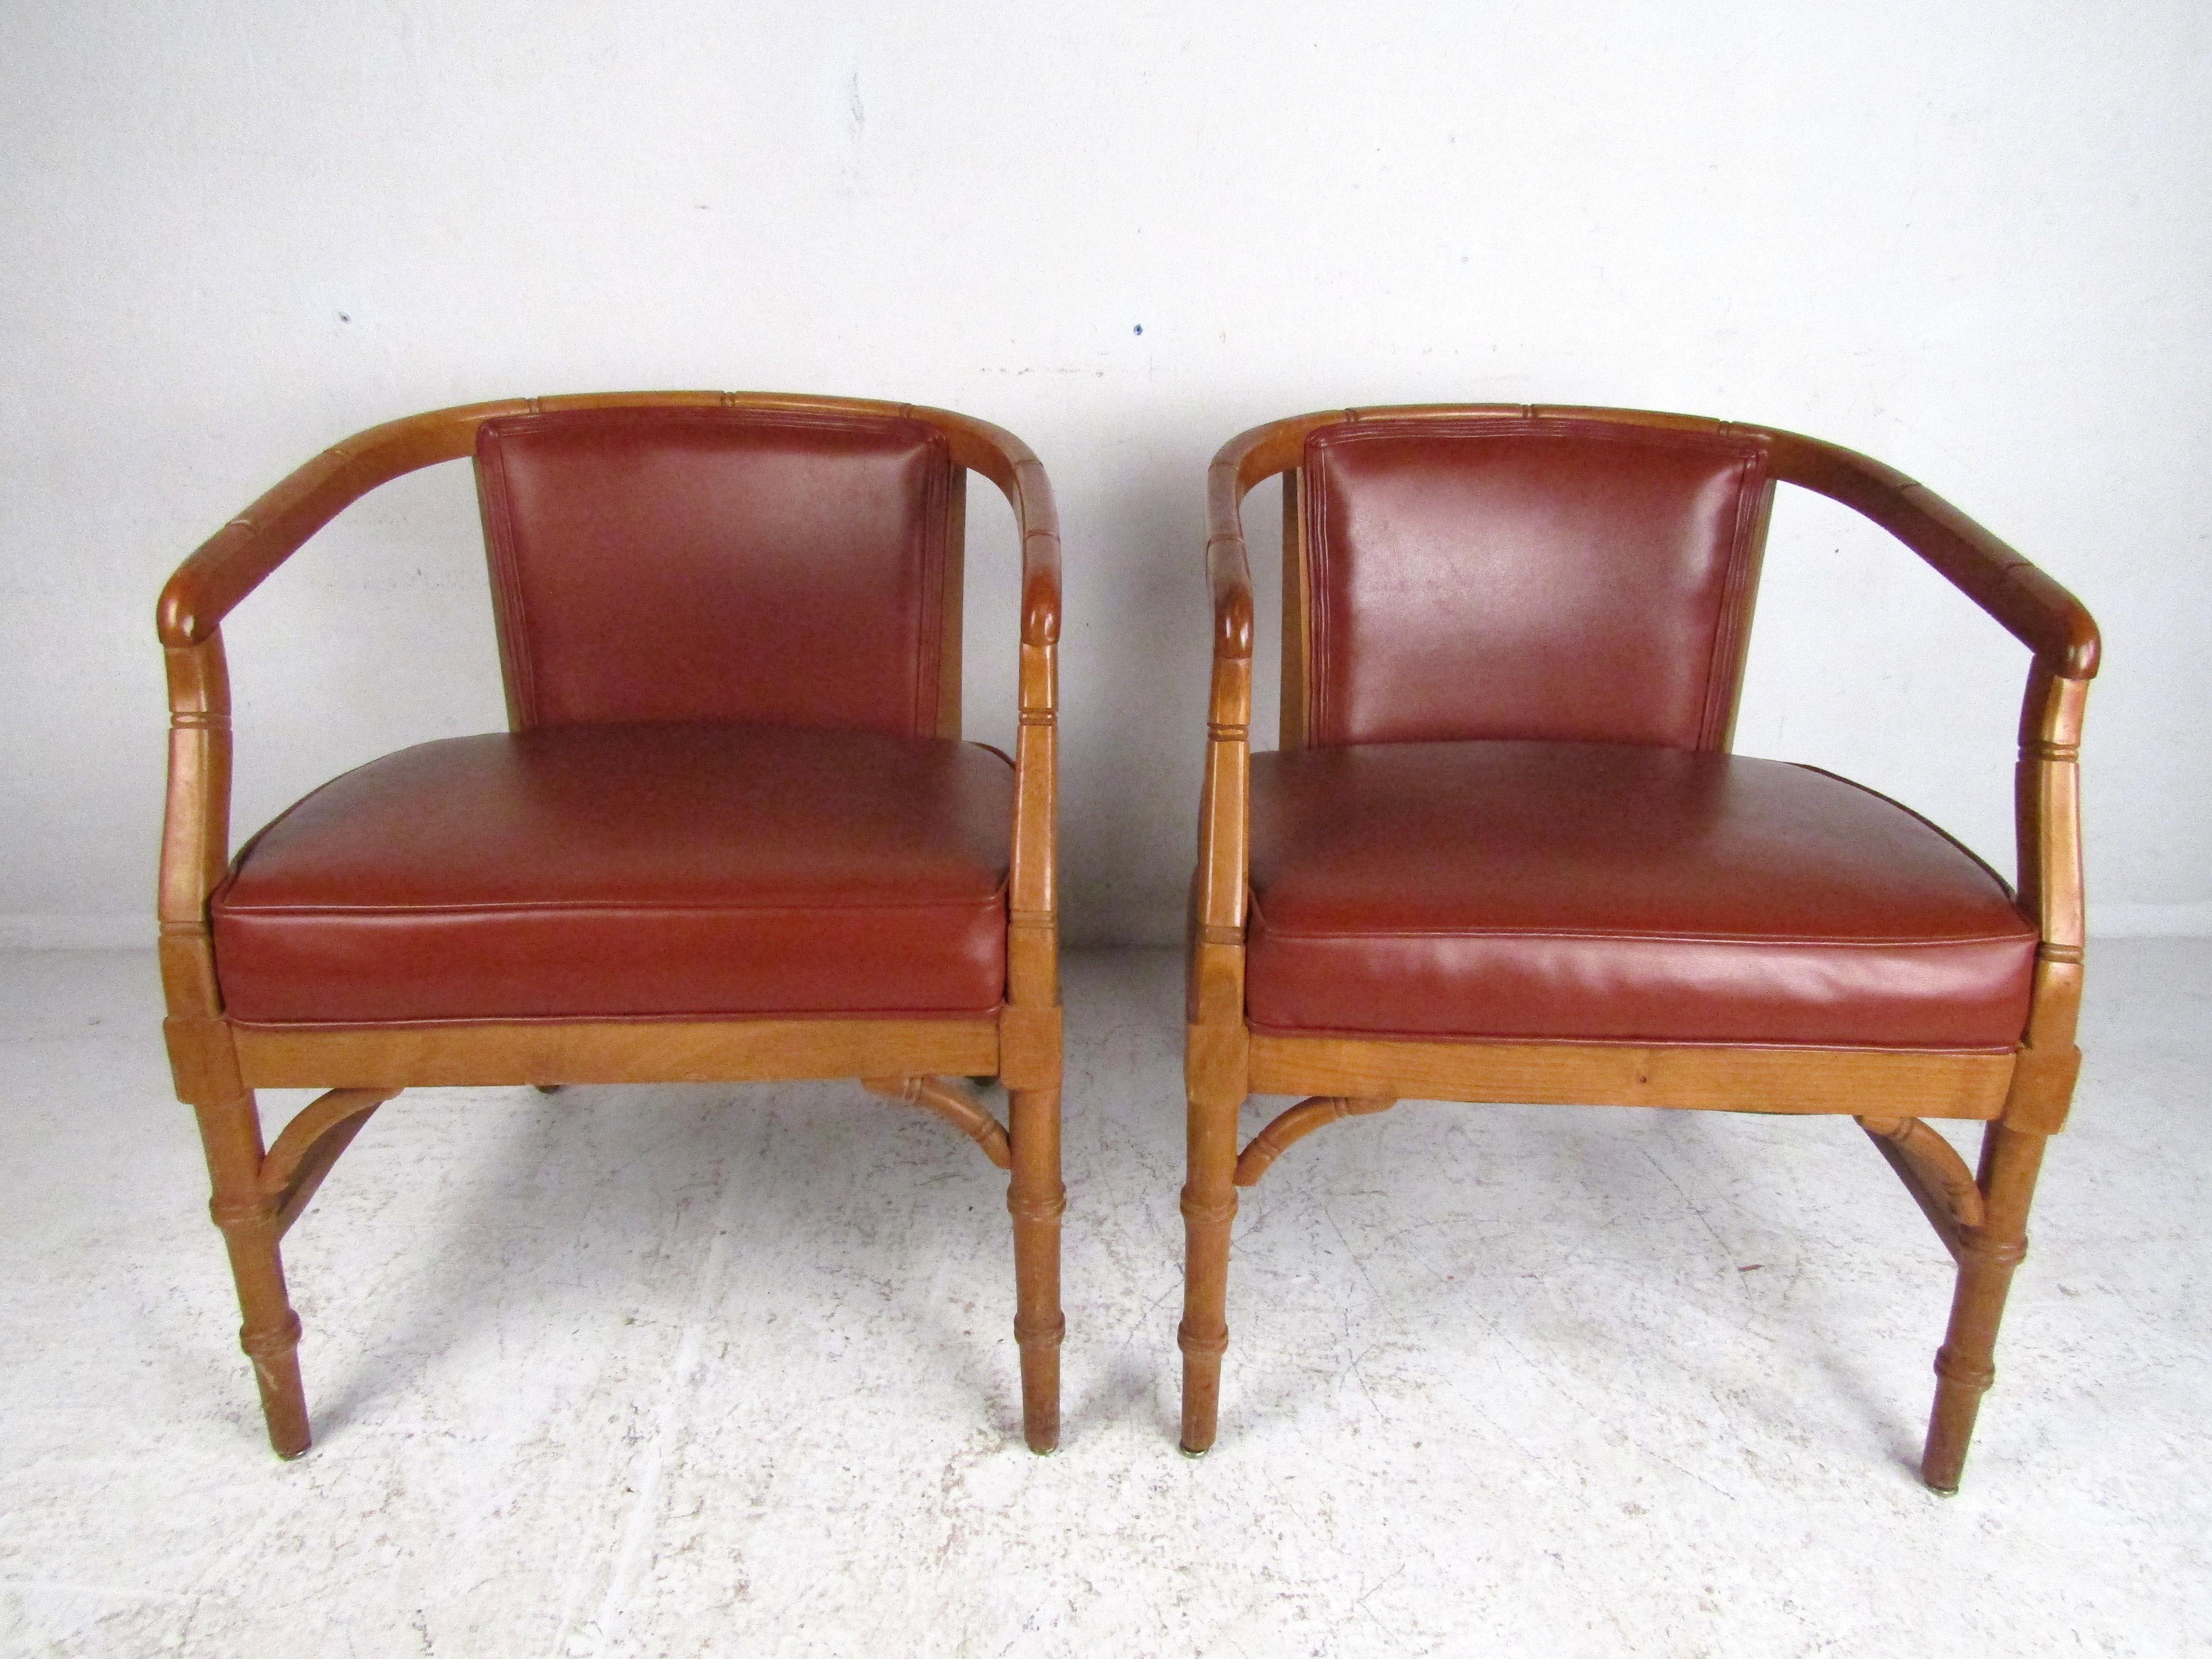 Atemberaubendes Paar moderner Sessel aus der Jahrhundertmitte. Sitze und Rückenlehnen sind mit Kunstleder im Vintage-Stil gepolstert. Stilvoll konturierter Rahmen. Bitte bestätigen Sie den Standort des Artikels beim Händler (NJ oder NY).